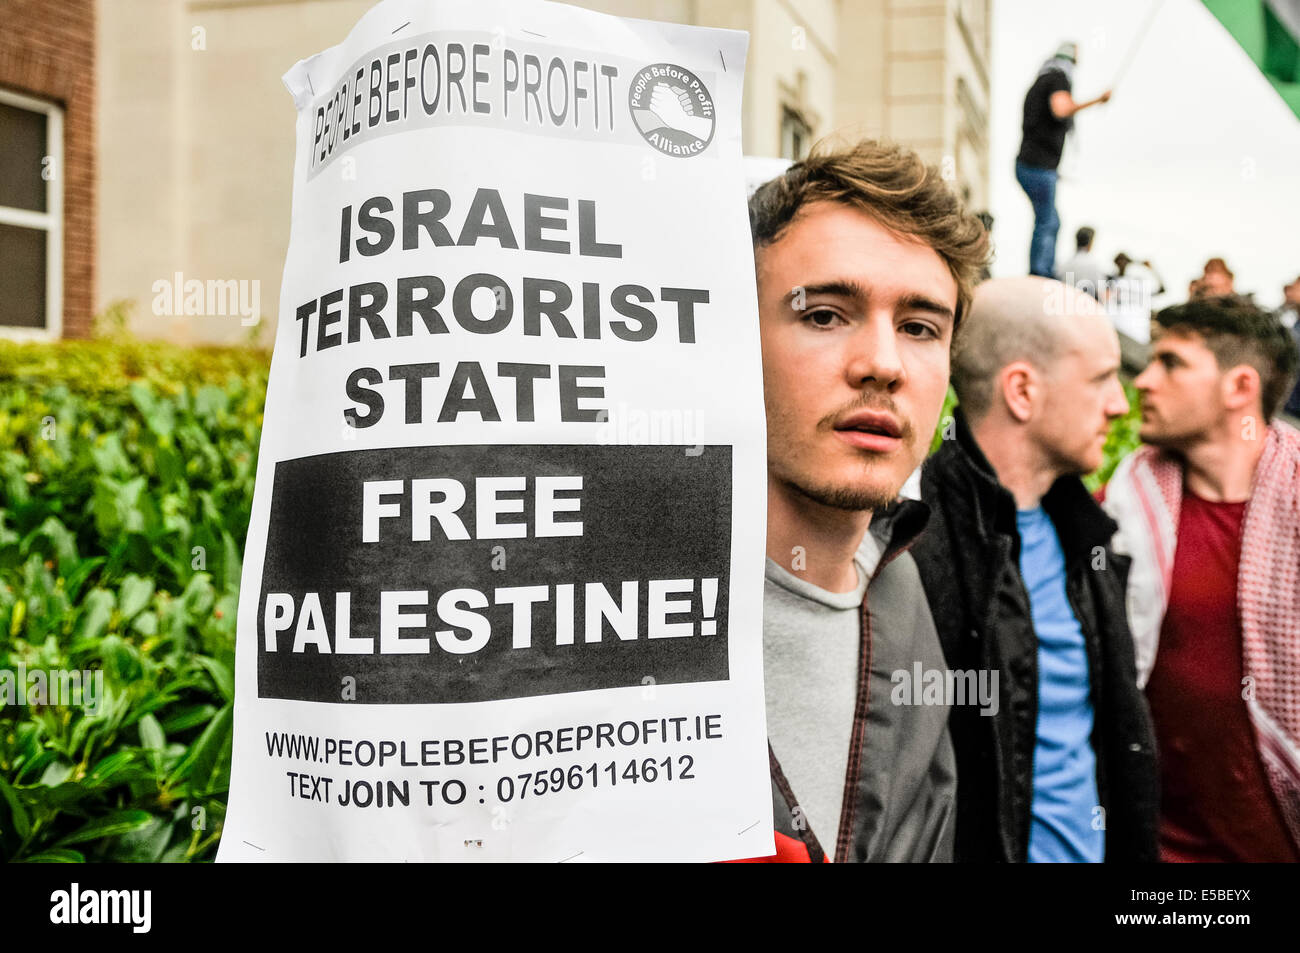 Belfast, Nordirland. 26. Juli 2014 - ein Mann hält ein Plakat-Sprichwort "terroristischen Staat Israel.  Freie Palästina! " Bildnachweis: Stephen Barnes/Alamy Live-Nachrichten Stockfoto